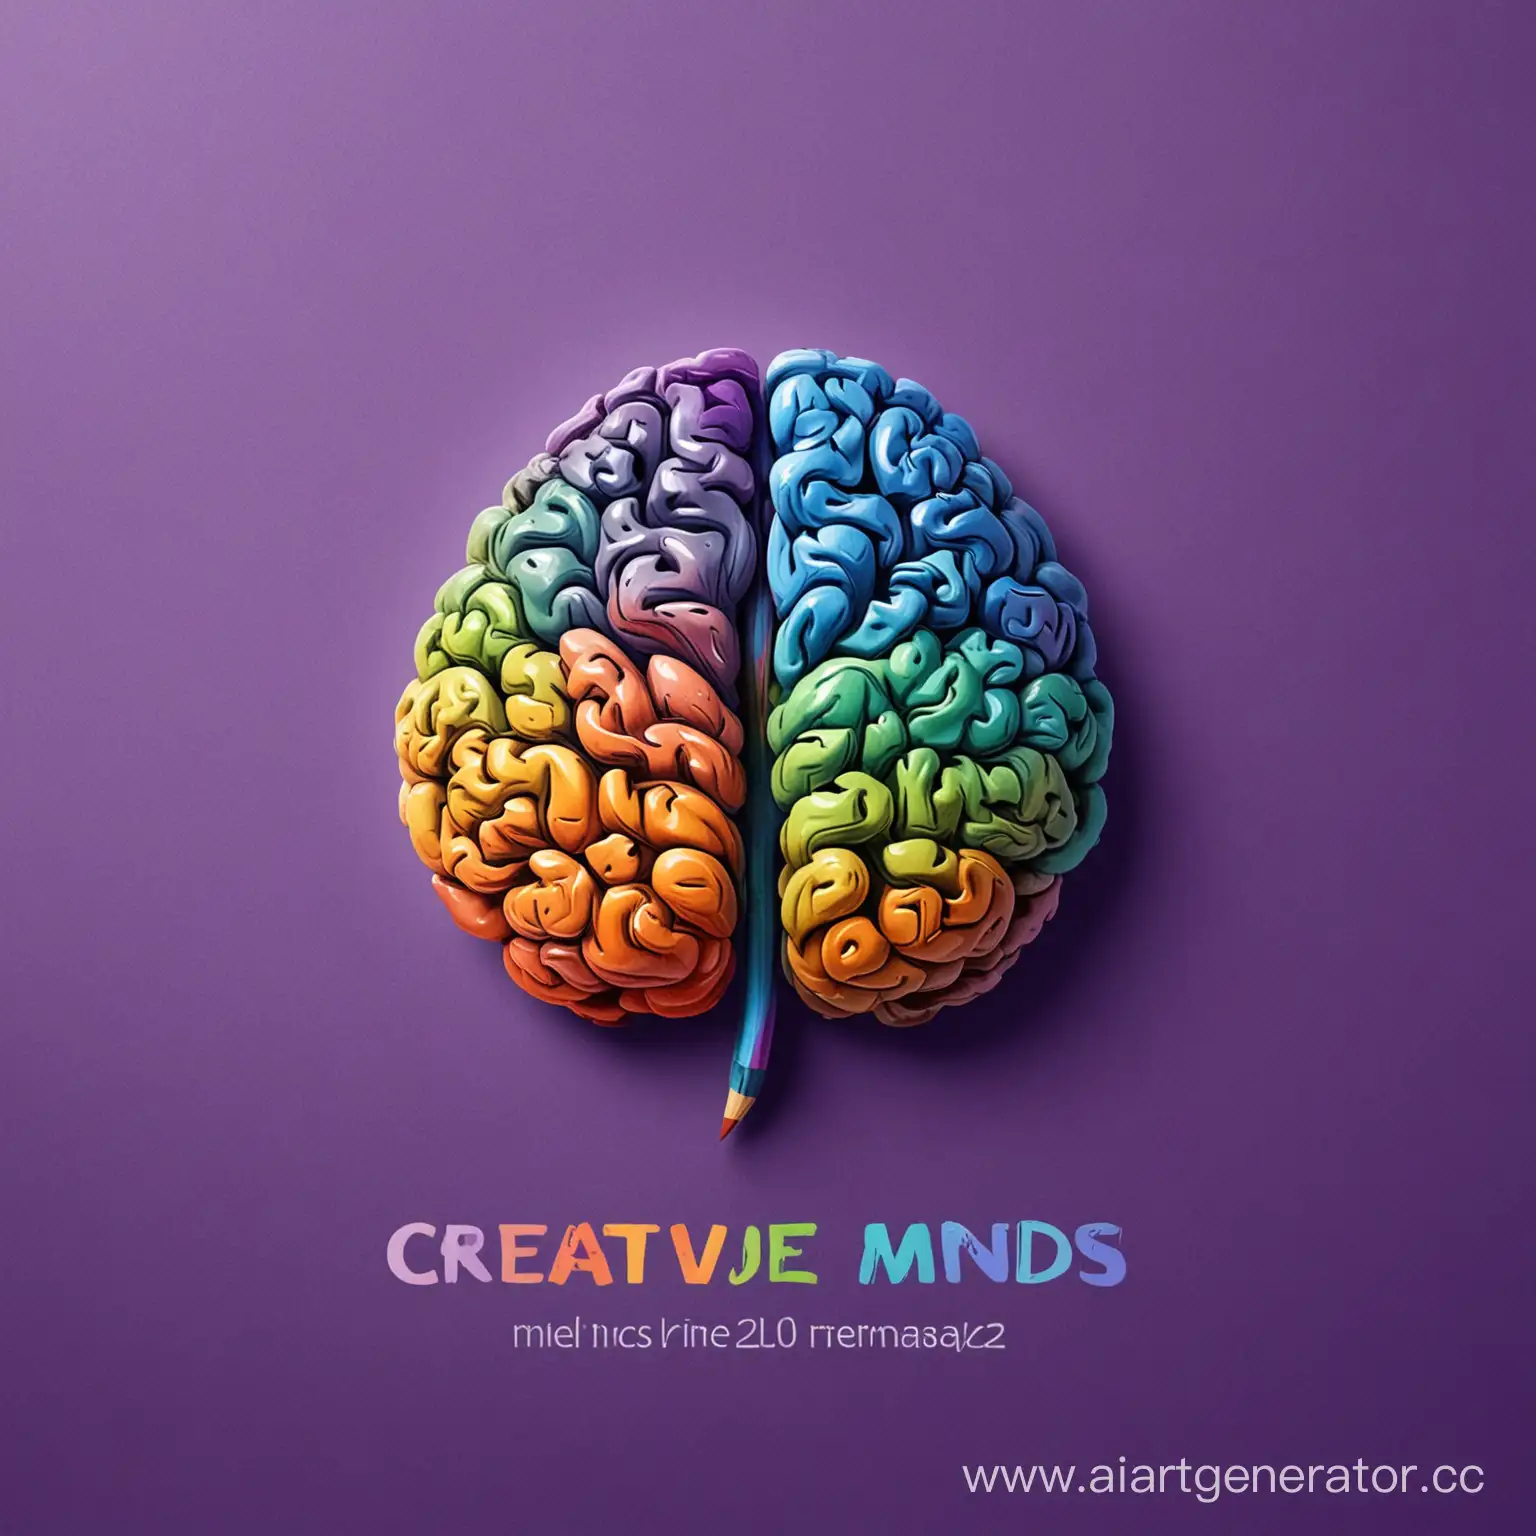 Логотип: изображение мозга, внутри которого находится палитра красок и кисти. Надпись "Креативные умы" расположена под изображением.Цветовая гамма: яркие и насыщенные цвета, такие как синий, фиолетовый, зеленый и оранжевый, чтобы подчеркнуть творческий характер группы.

Шрифт: современный и стильный, чтобы передать впечатление о креативности и профессионализме группы.

